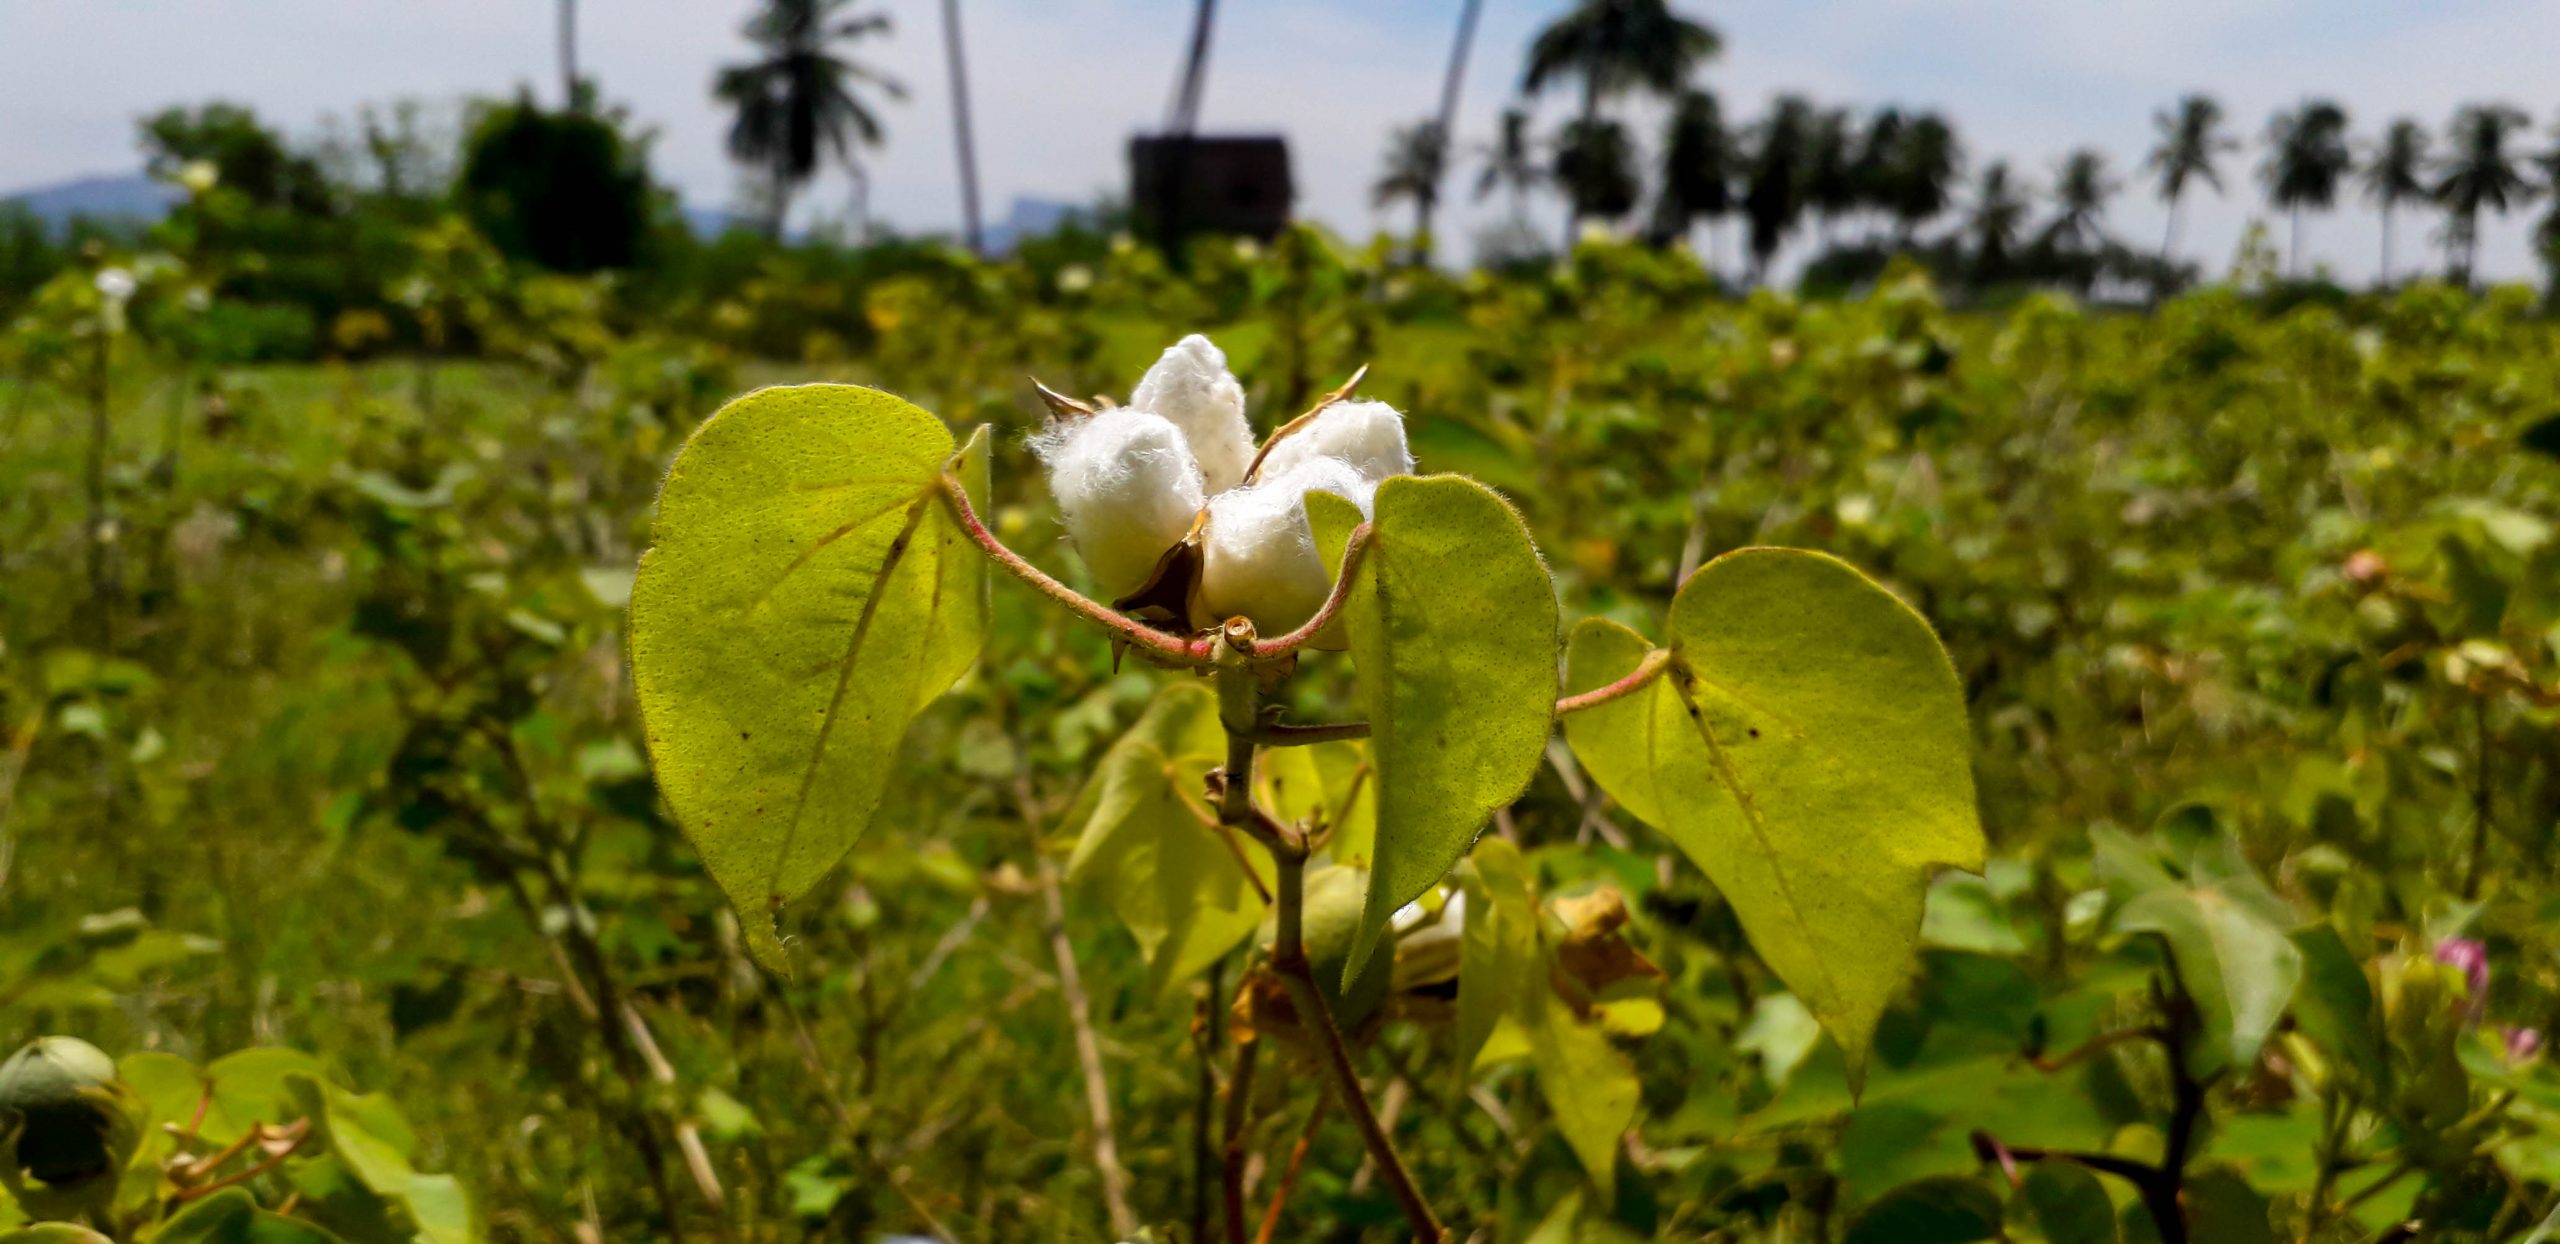 cotton plant